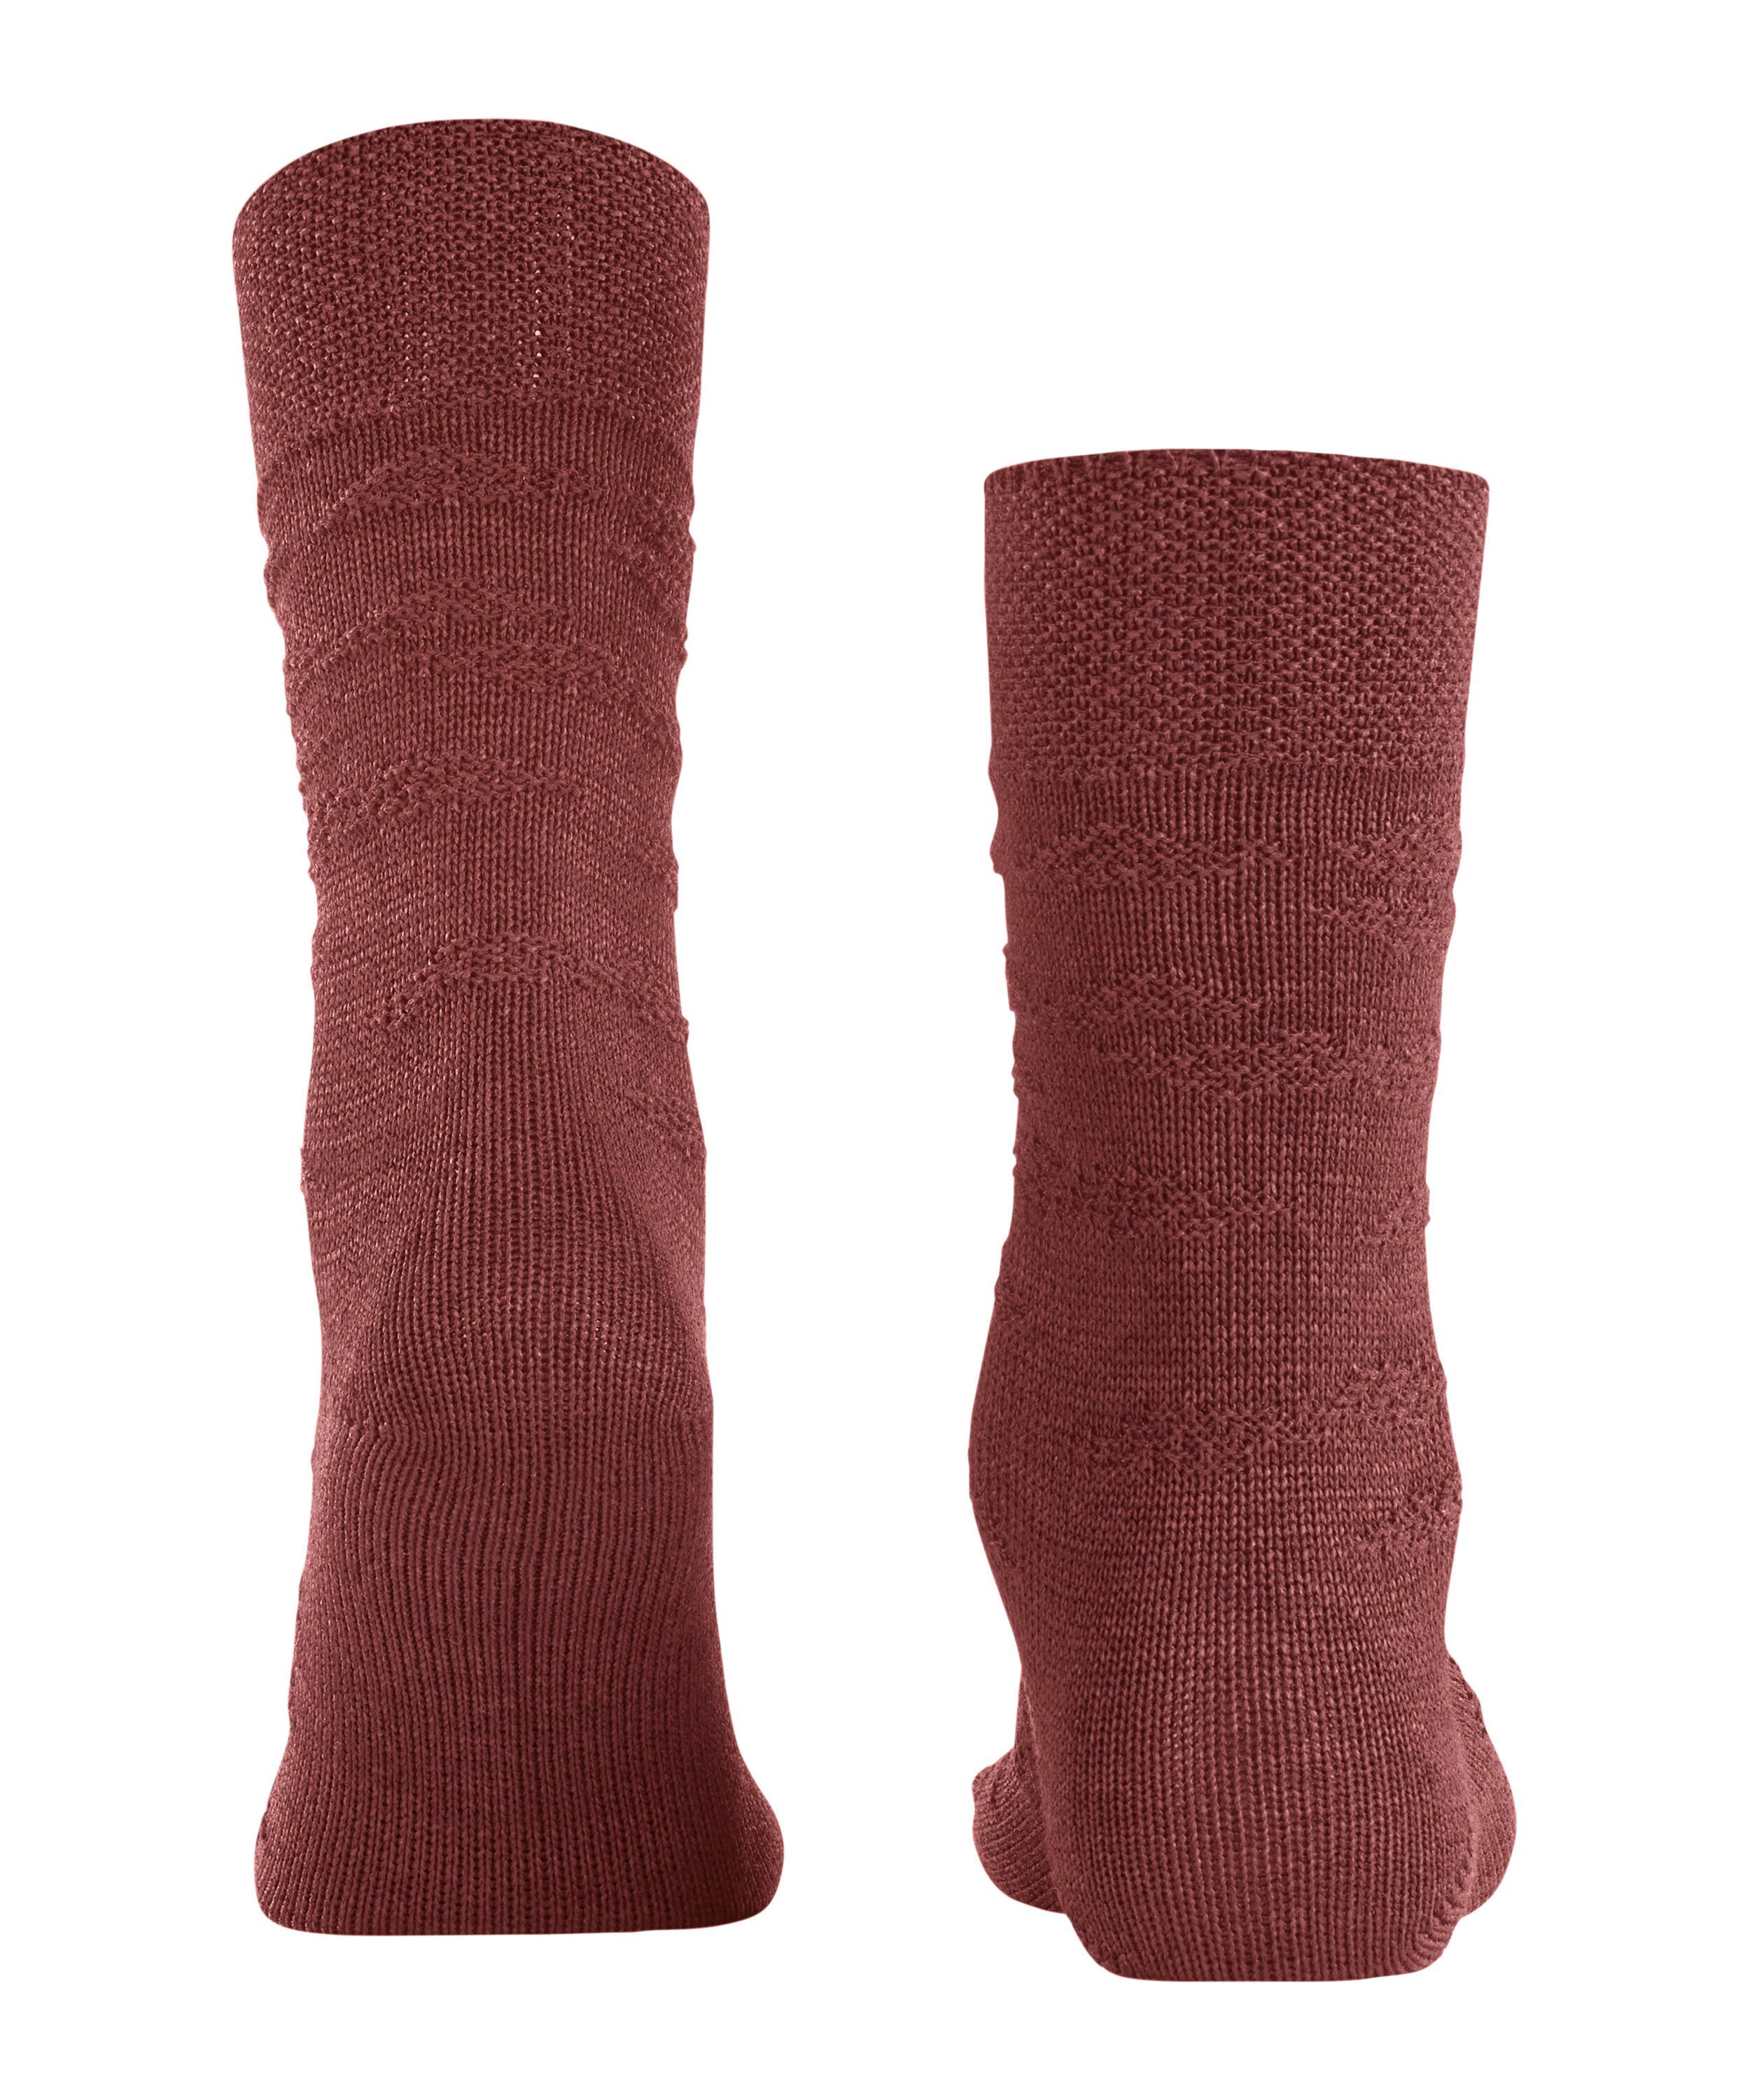 (1-Paar) FALKE Socken (8214) Packaging rust Sensitive